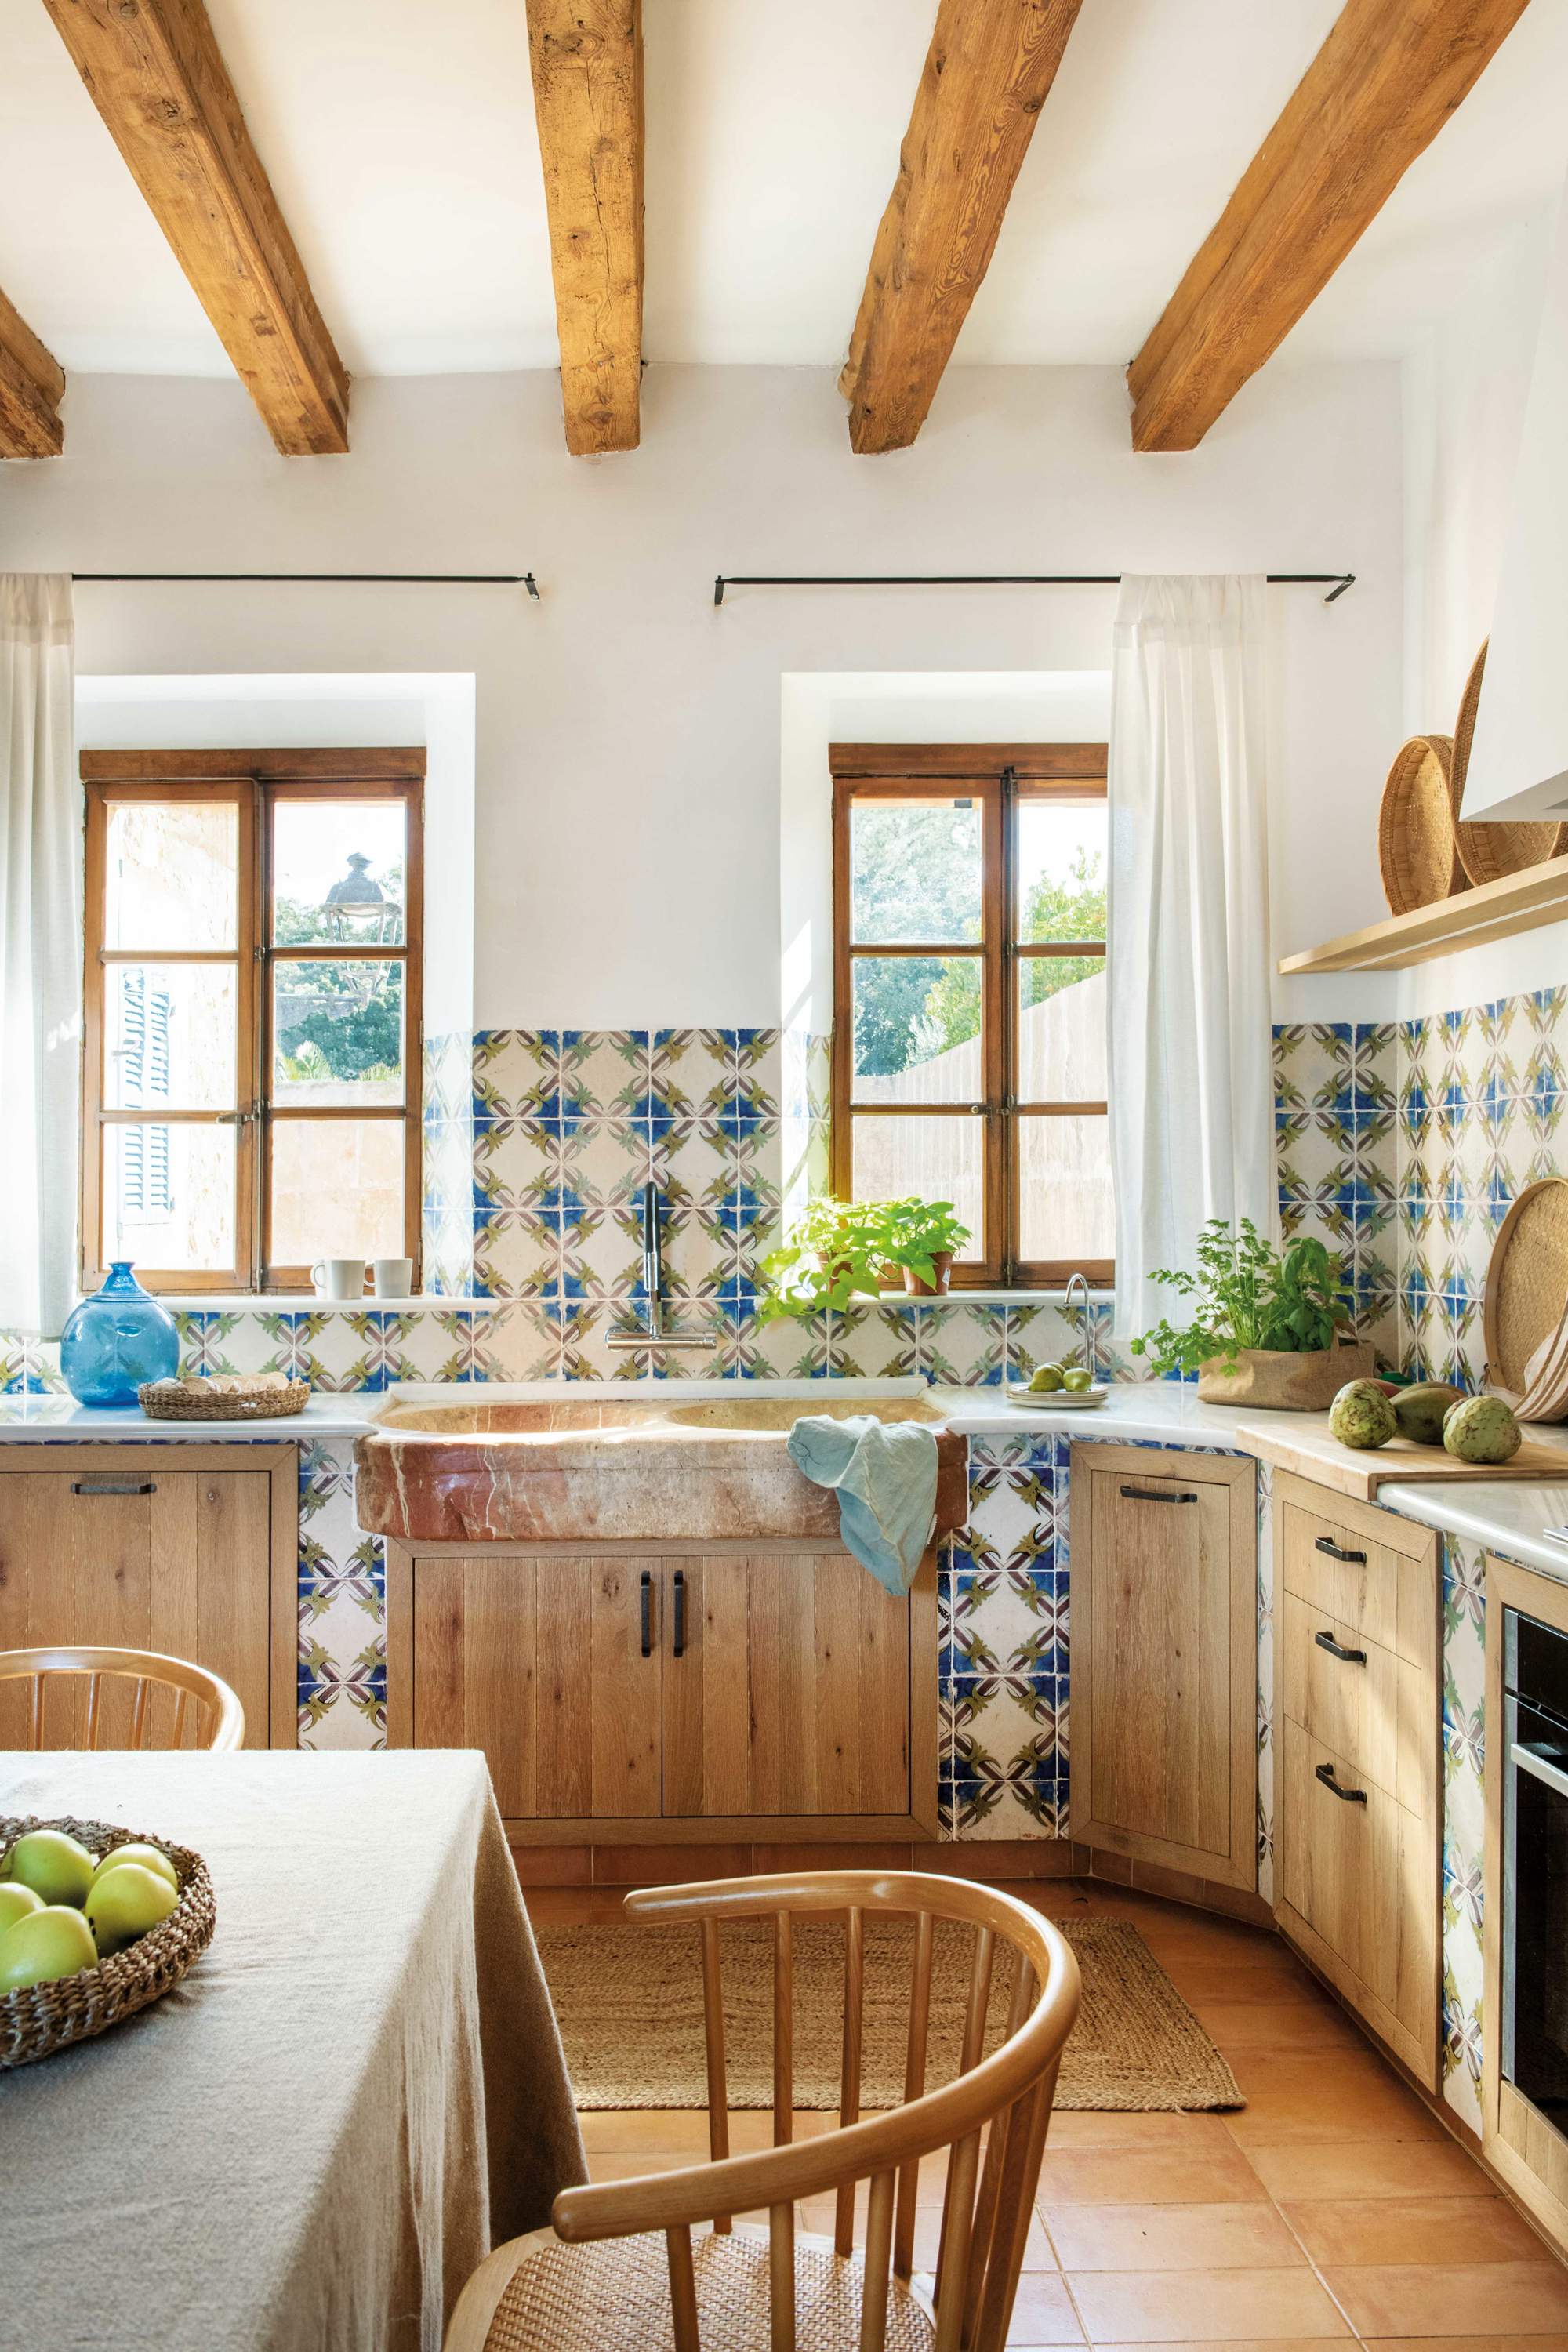 Cocina rústica con frentes de madera, vigas, azulejos estampados y office